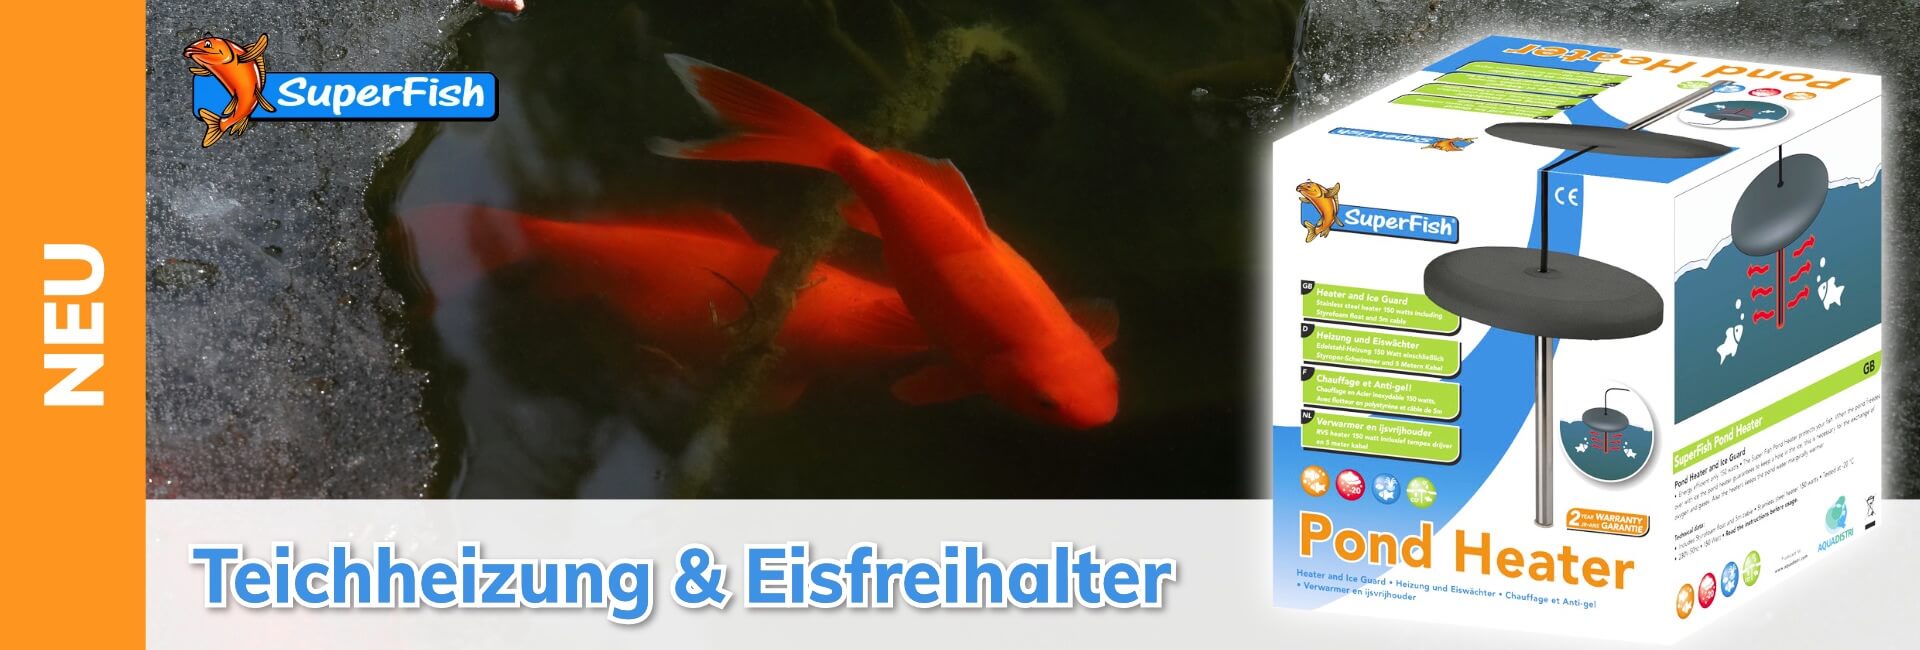 SuperFish Teichheizung & Eisfreihalter